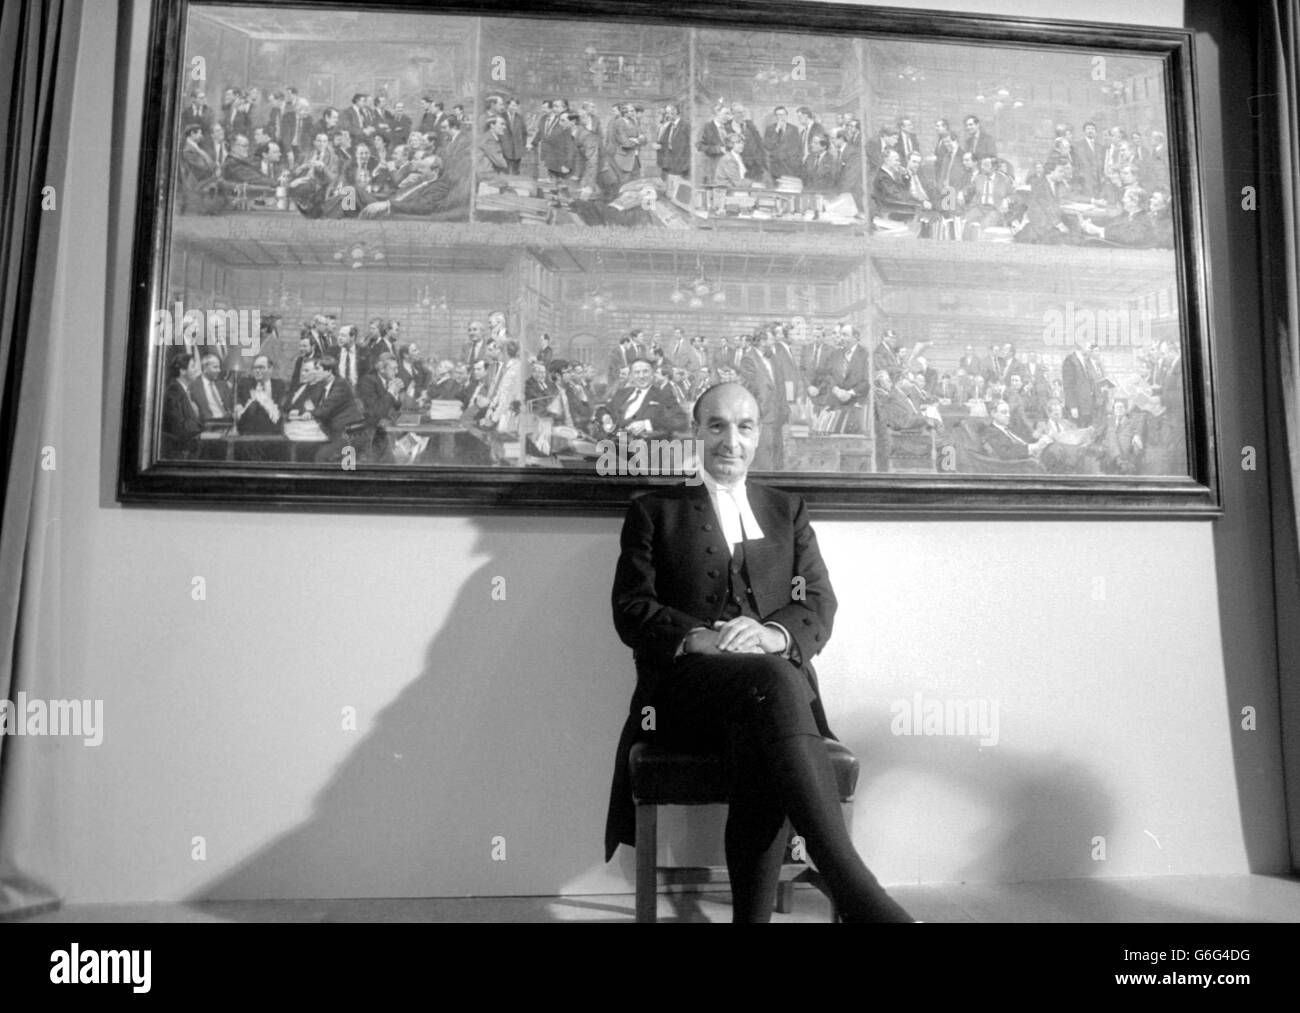 Der Sprecher des Unterhauses, Bernard Weatherill, mit dem „anderen Bild“, das er im Unterhaus vorstellte. Es zeigt 156 Porträts von Abgeordneten, darunter viele Gesichter, die in dem offiziellen Gemälde, das im November letzten Jahres fertiggestellt wurde, nicht vertreten waren. Stockfoto